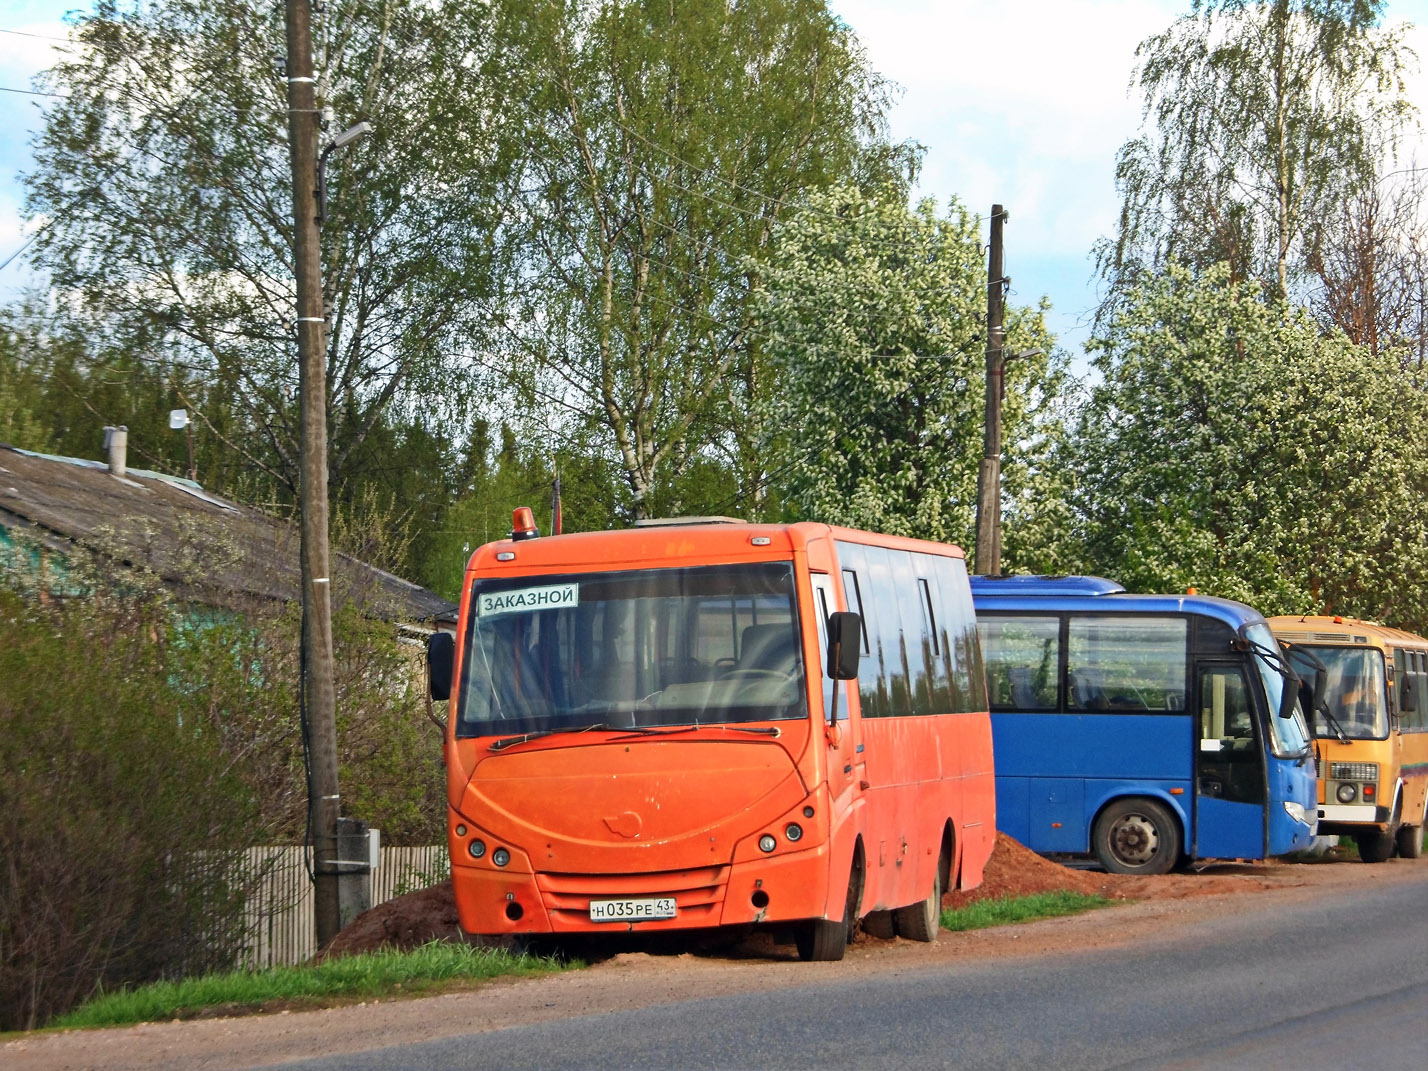 Kirovi terület, Volgabus-4298.01 sz.: Н 035 РЕ 43